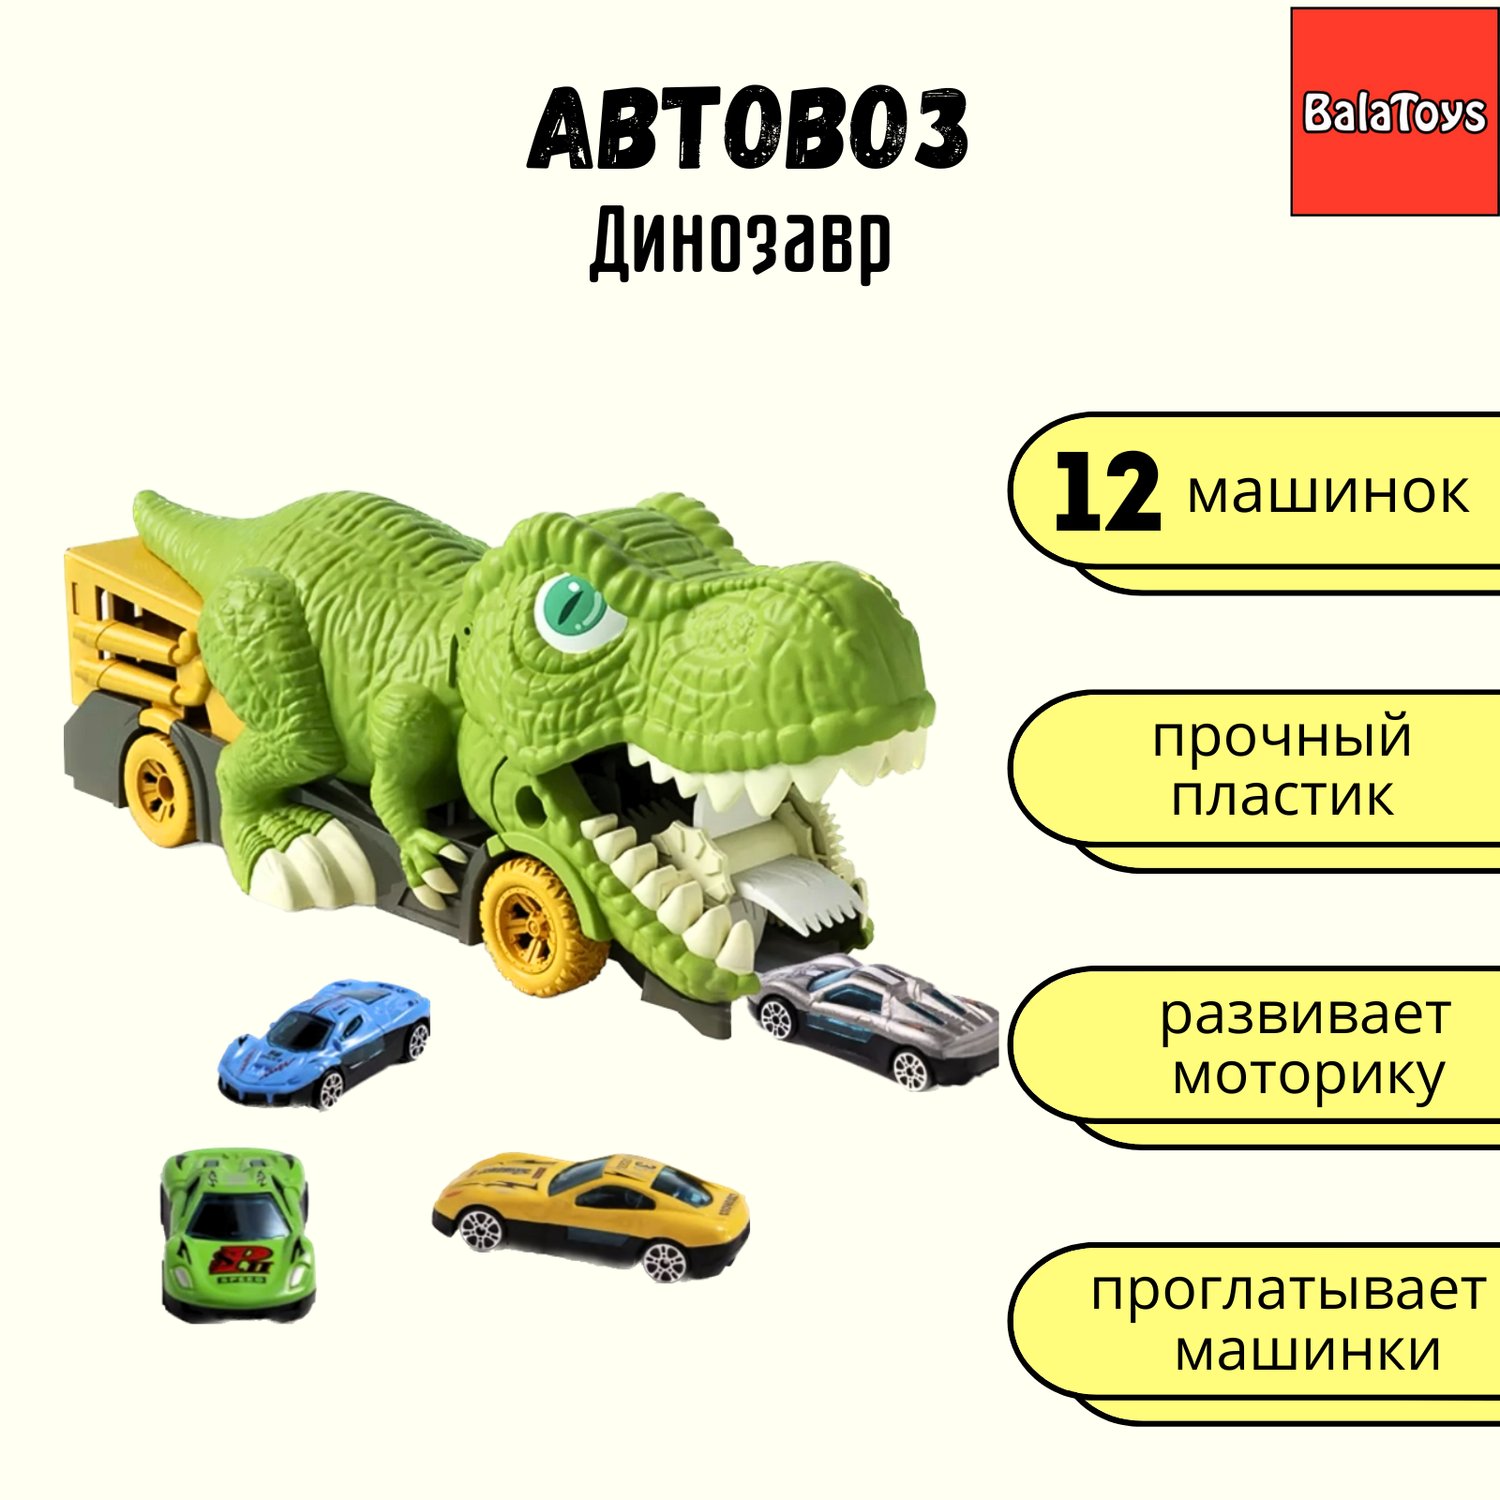 Автовоз Динозавр Монстр-траки BalaToys С 12 металлическими машинками АвтовозДино - фото 1